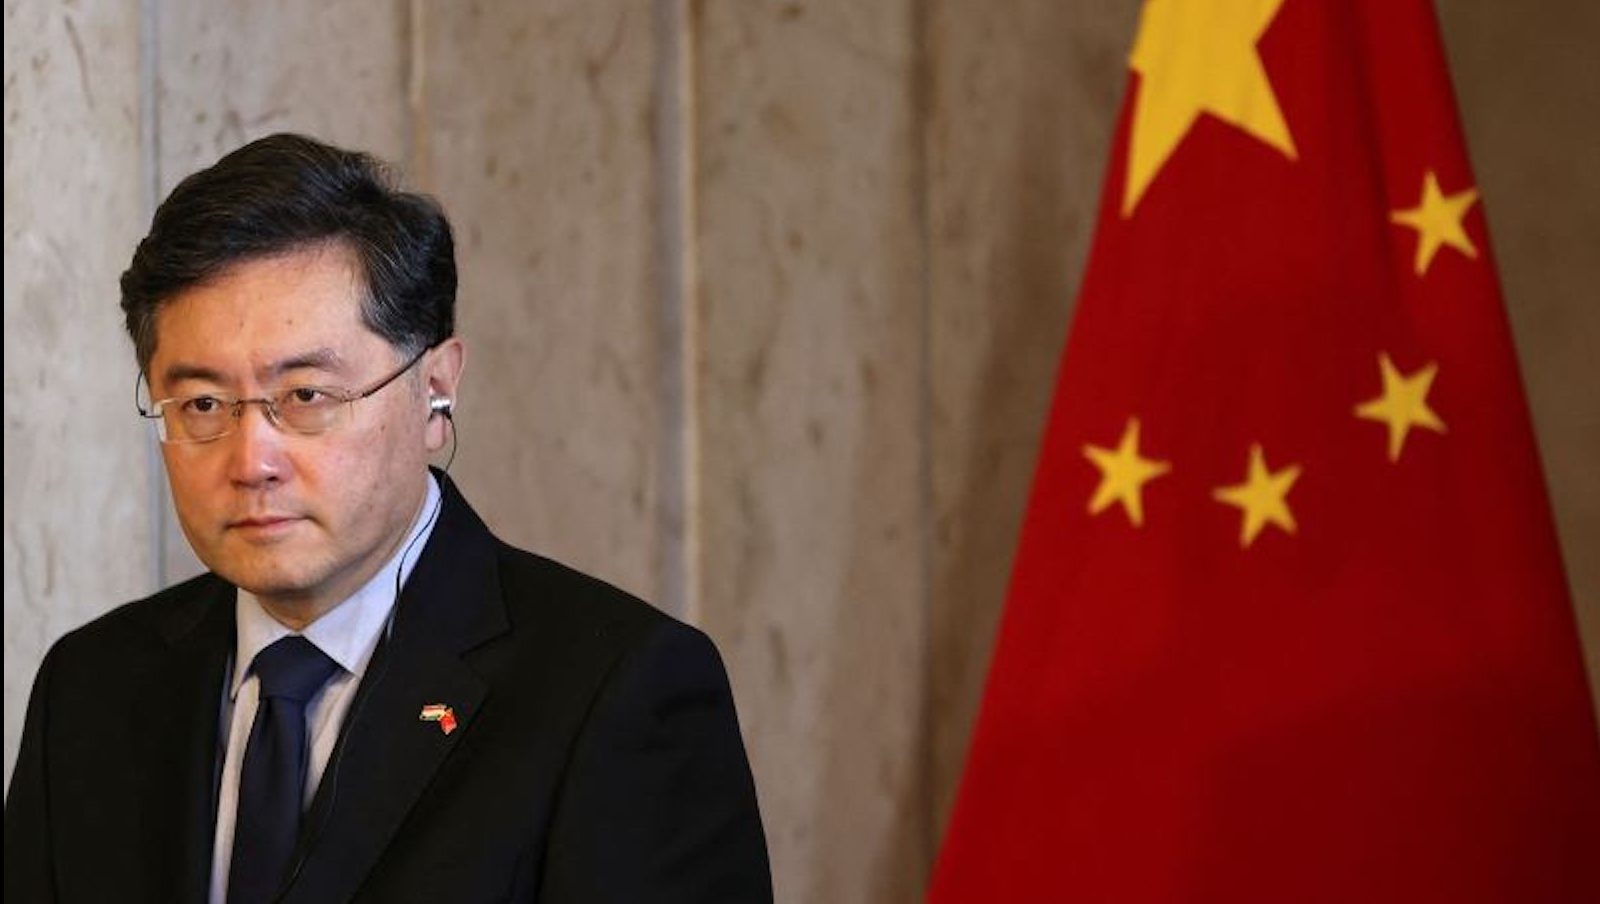 El ministro de Relaciones Exteriores de Xi Jinping desapareció de la vista del público. Su prolongada ausencia genera intensas especulaciones